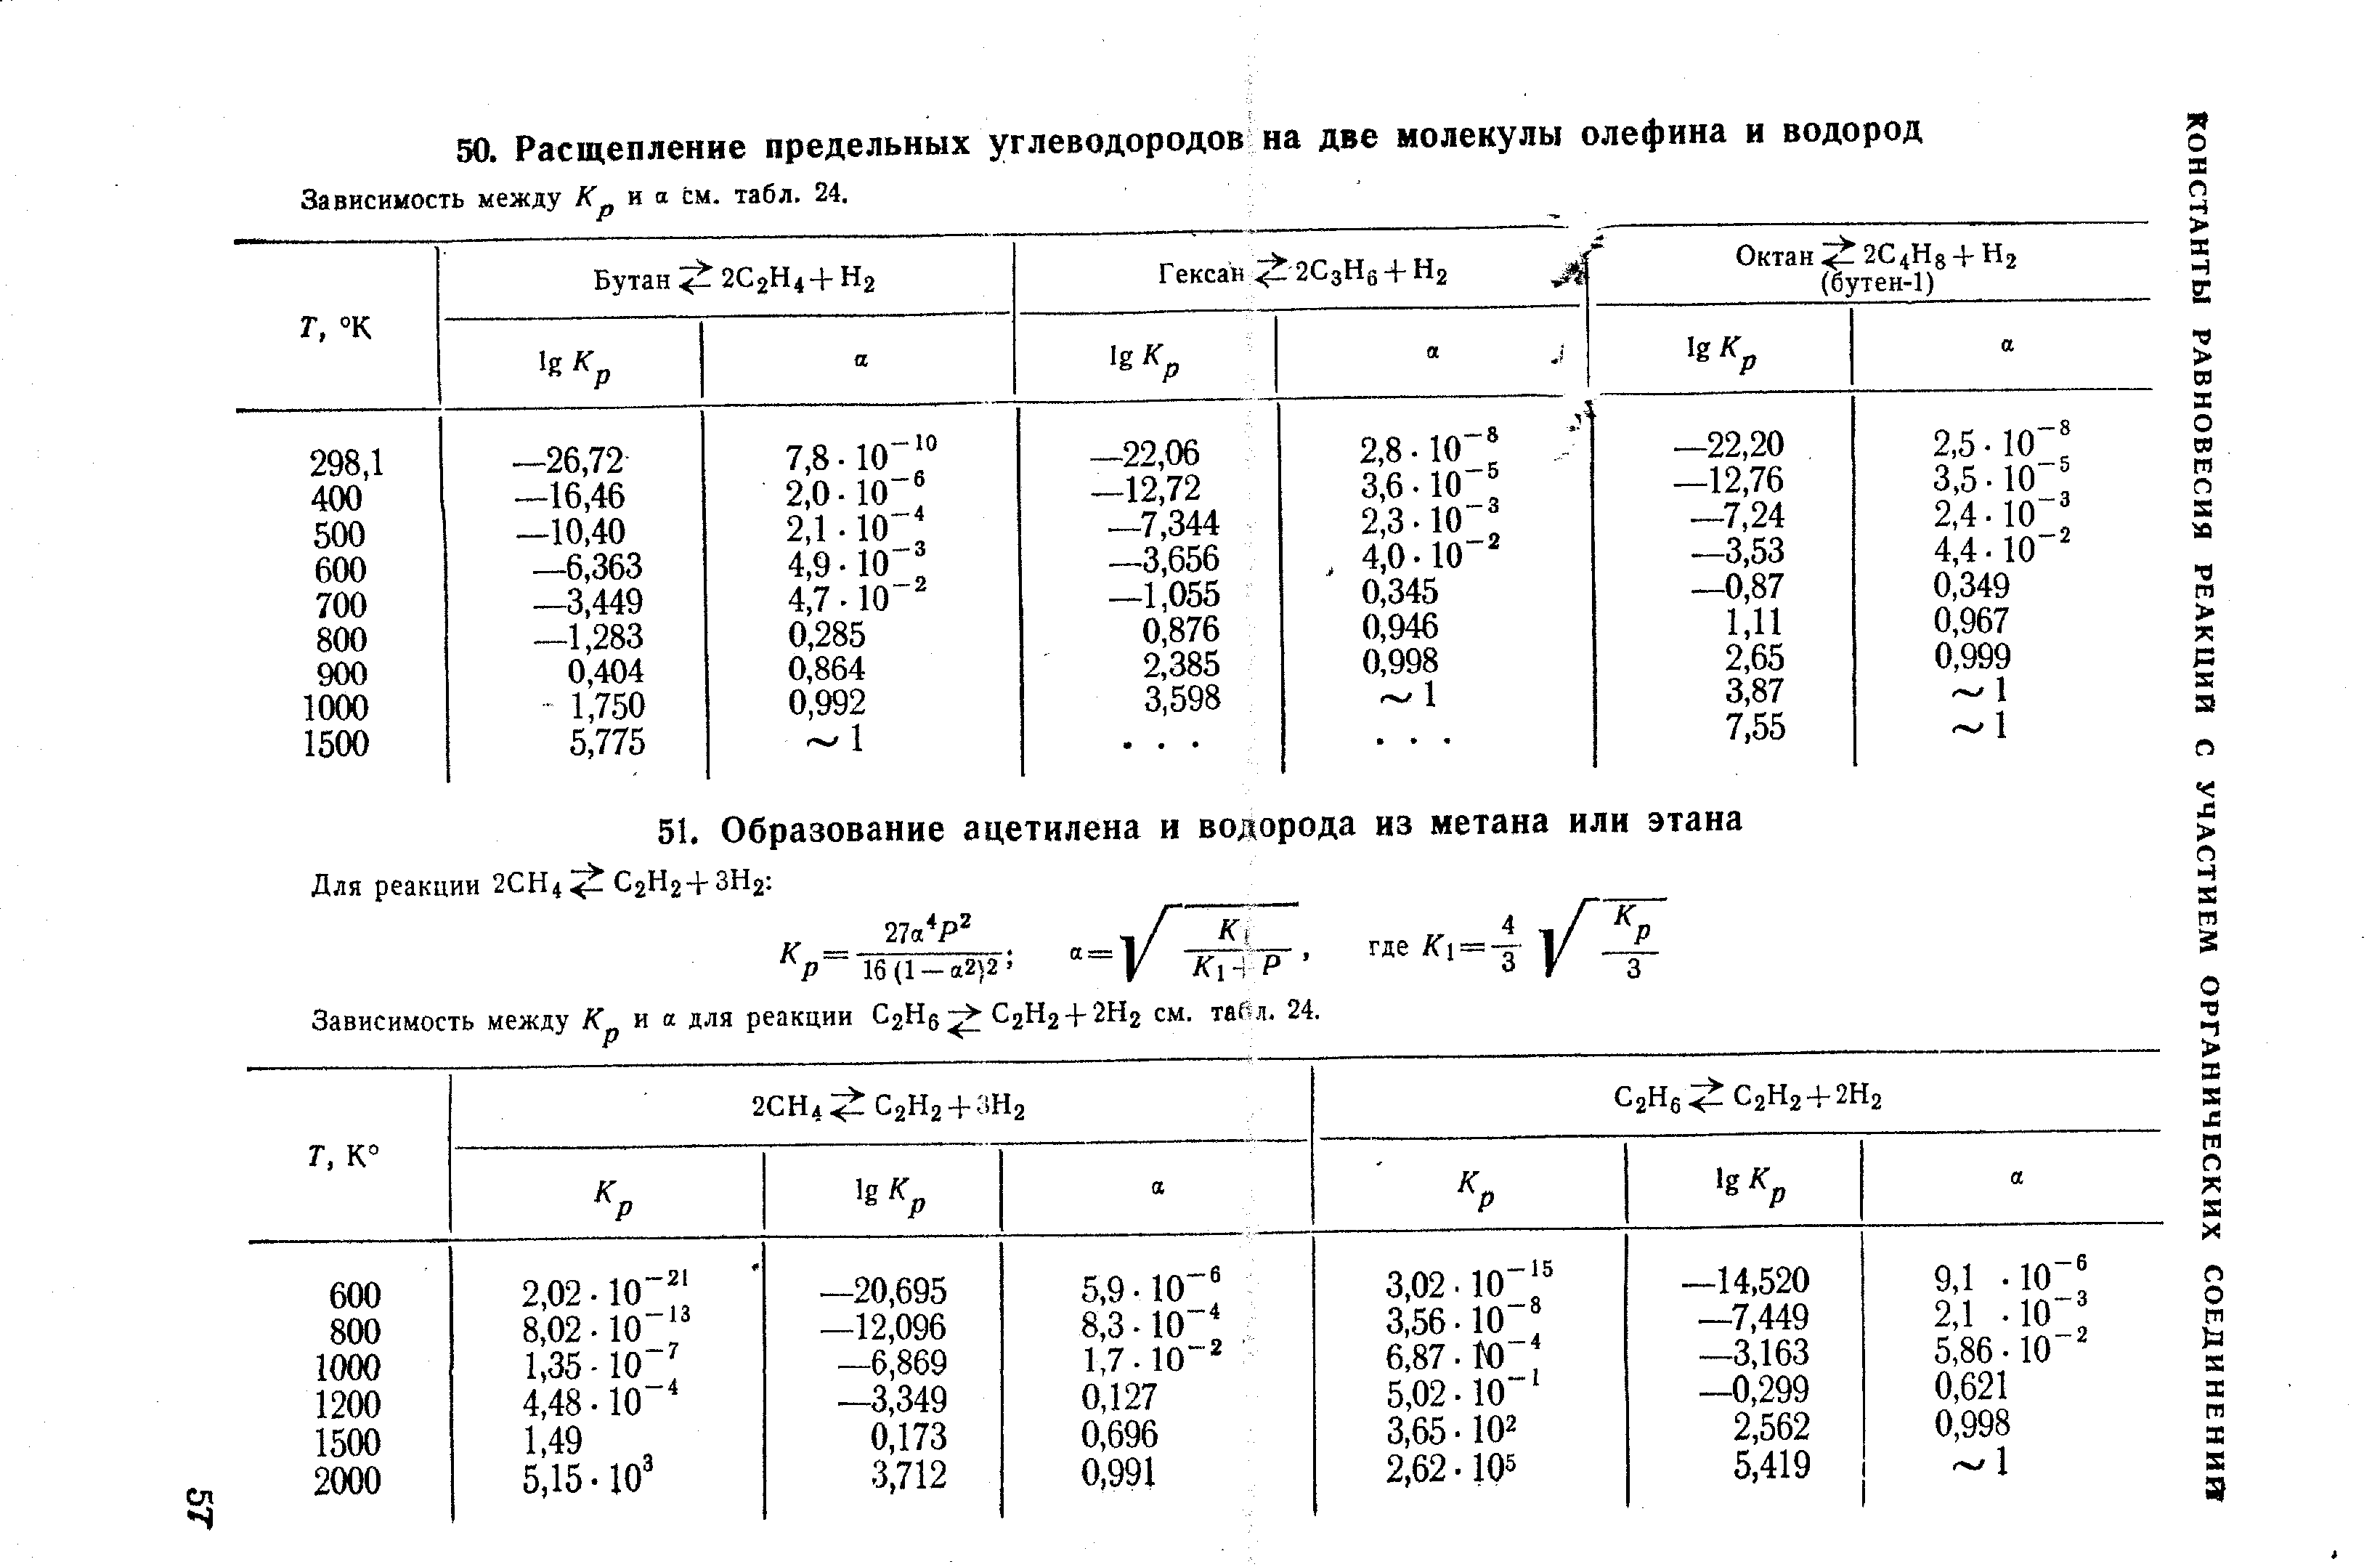 Зависимость между К и а см. табл. 24.